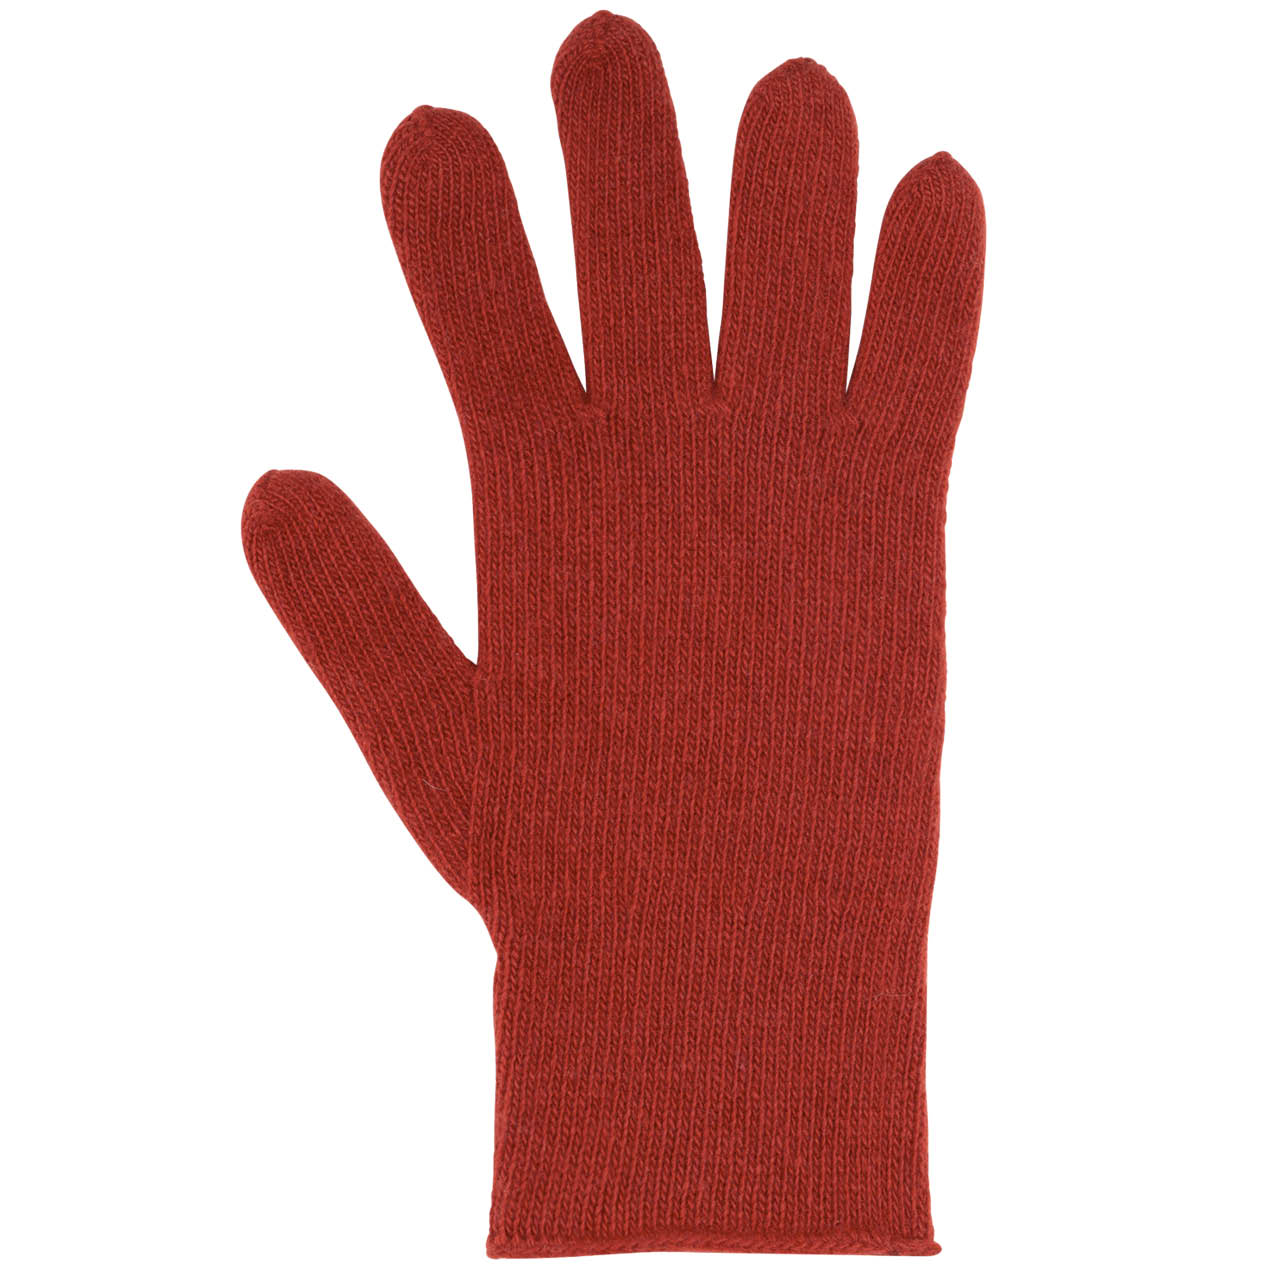 Damen Fingerhandschuhe Wolle Kaschmir rot